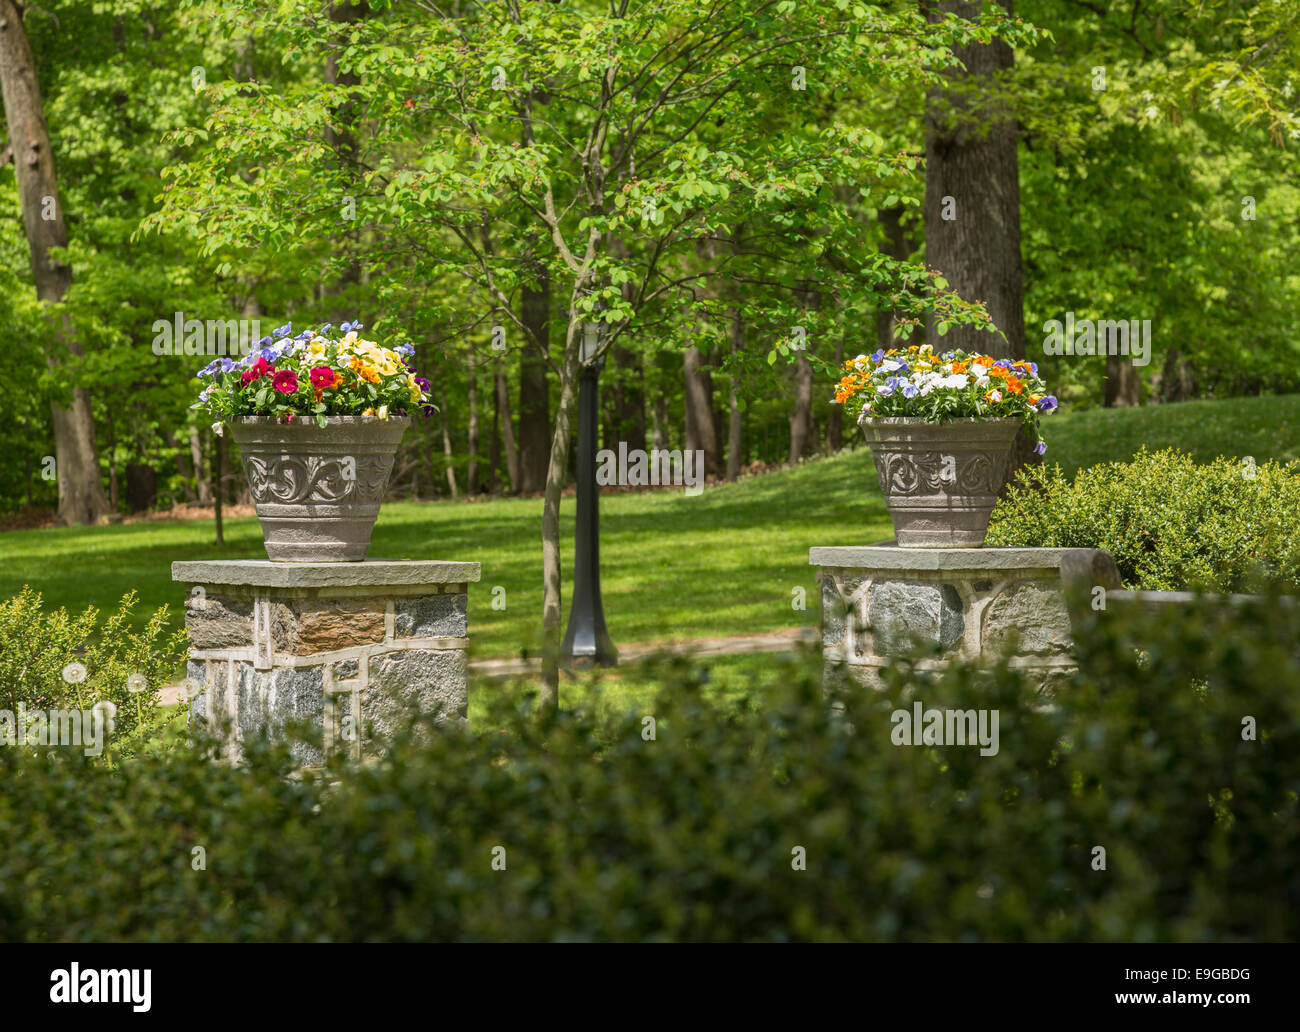 Two flower urns in sunlit garden Stock Photo